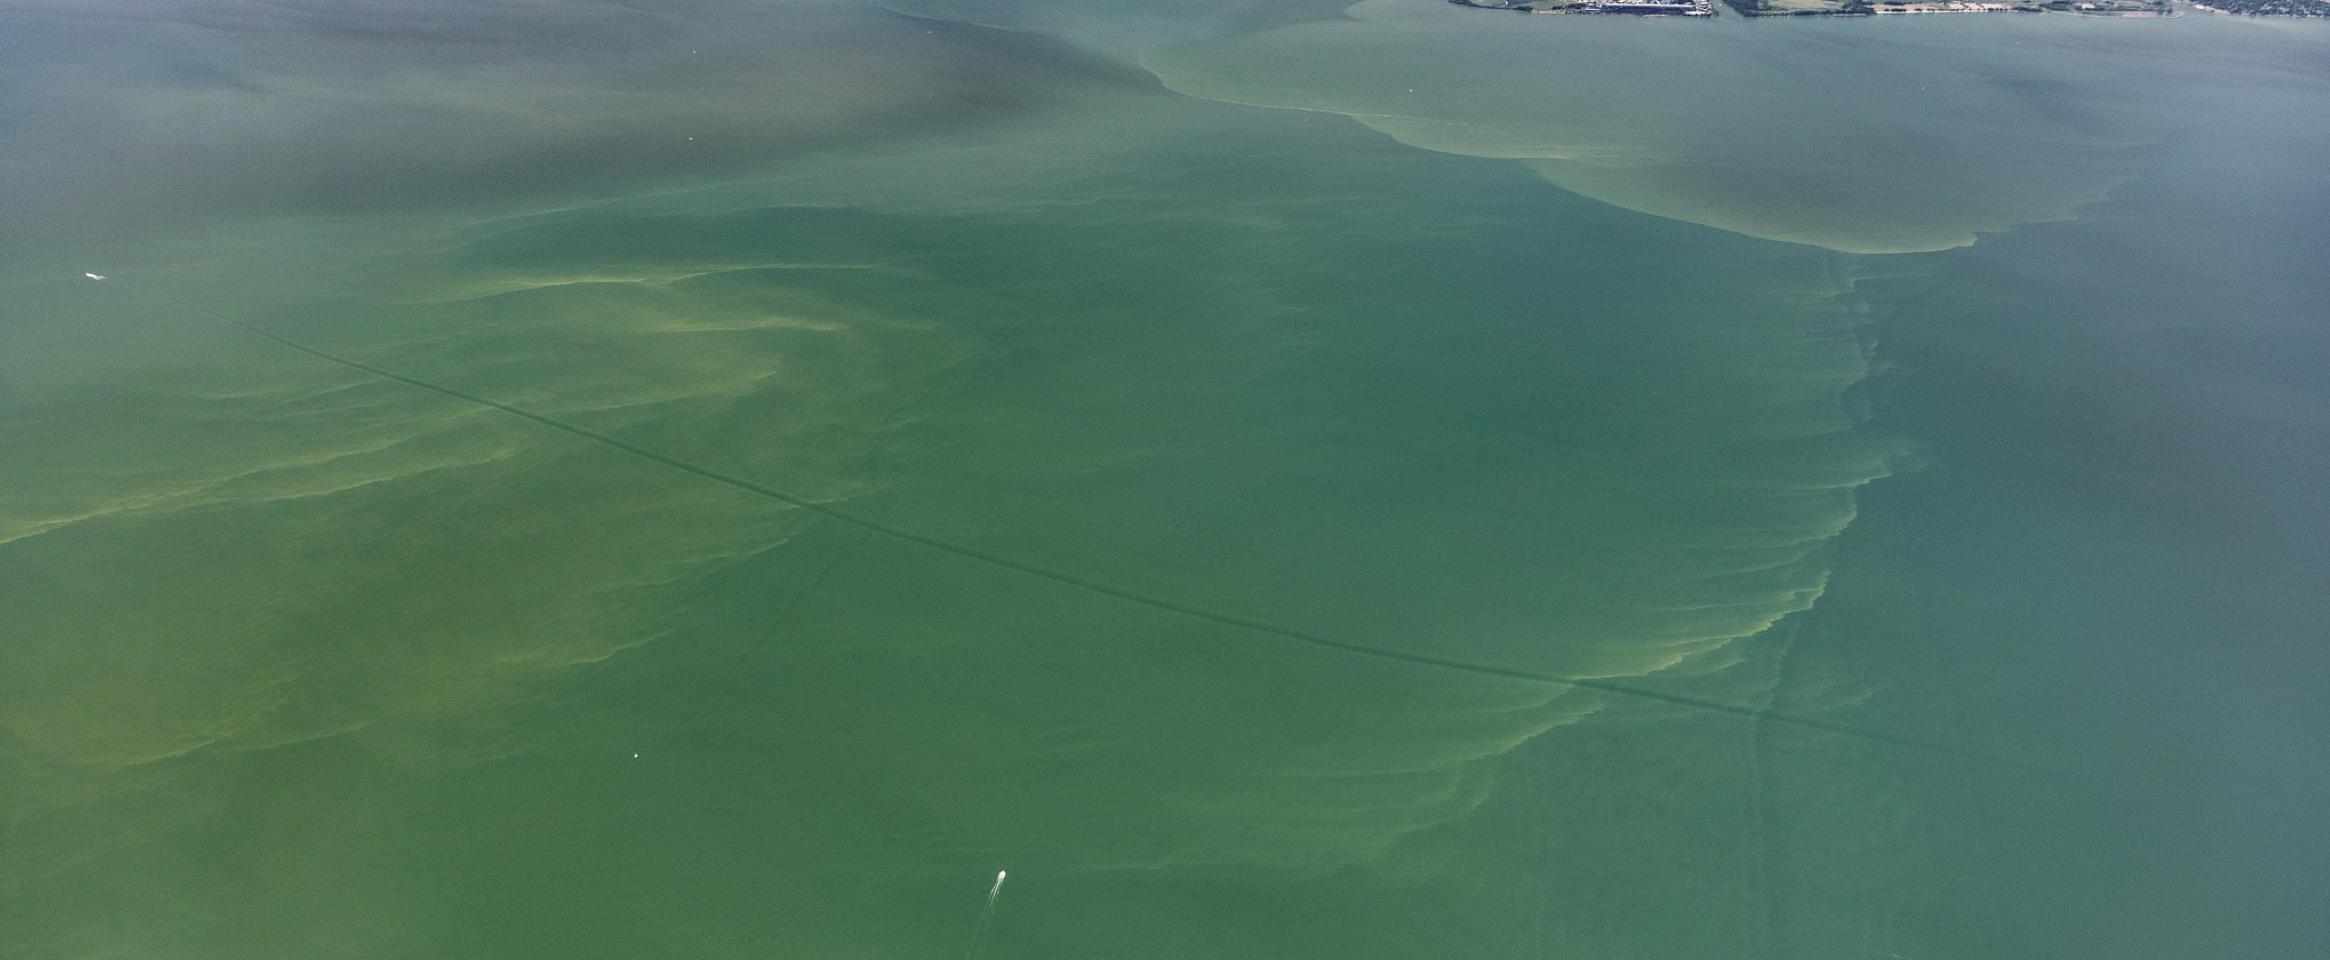 Aerial shot of a harmful algal bloom in Western Lake Erie